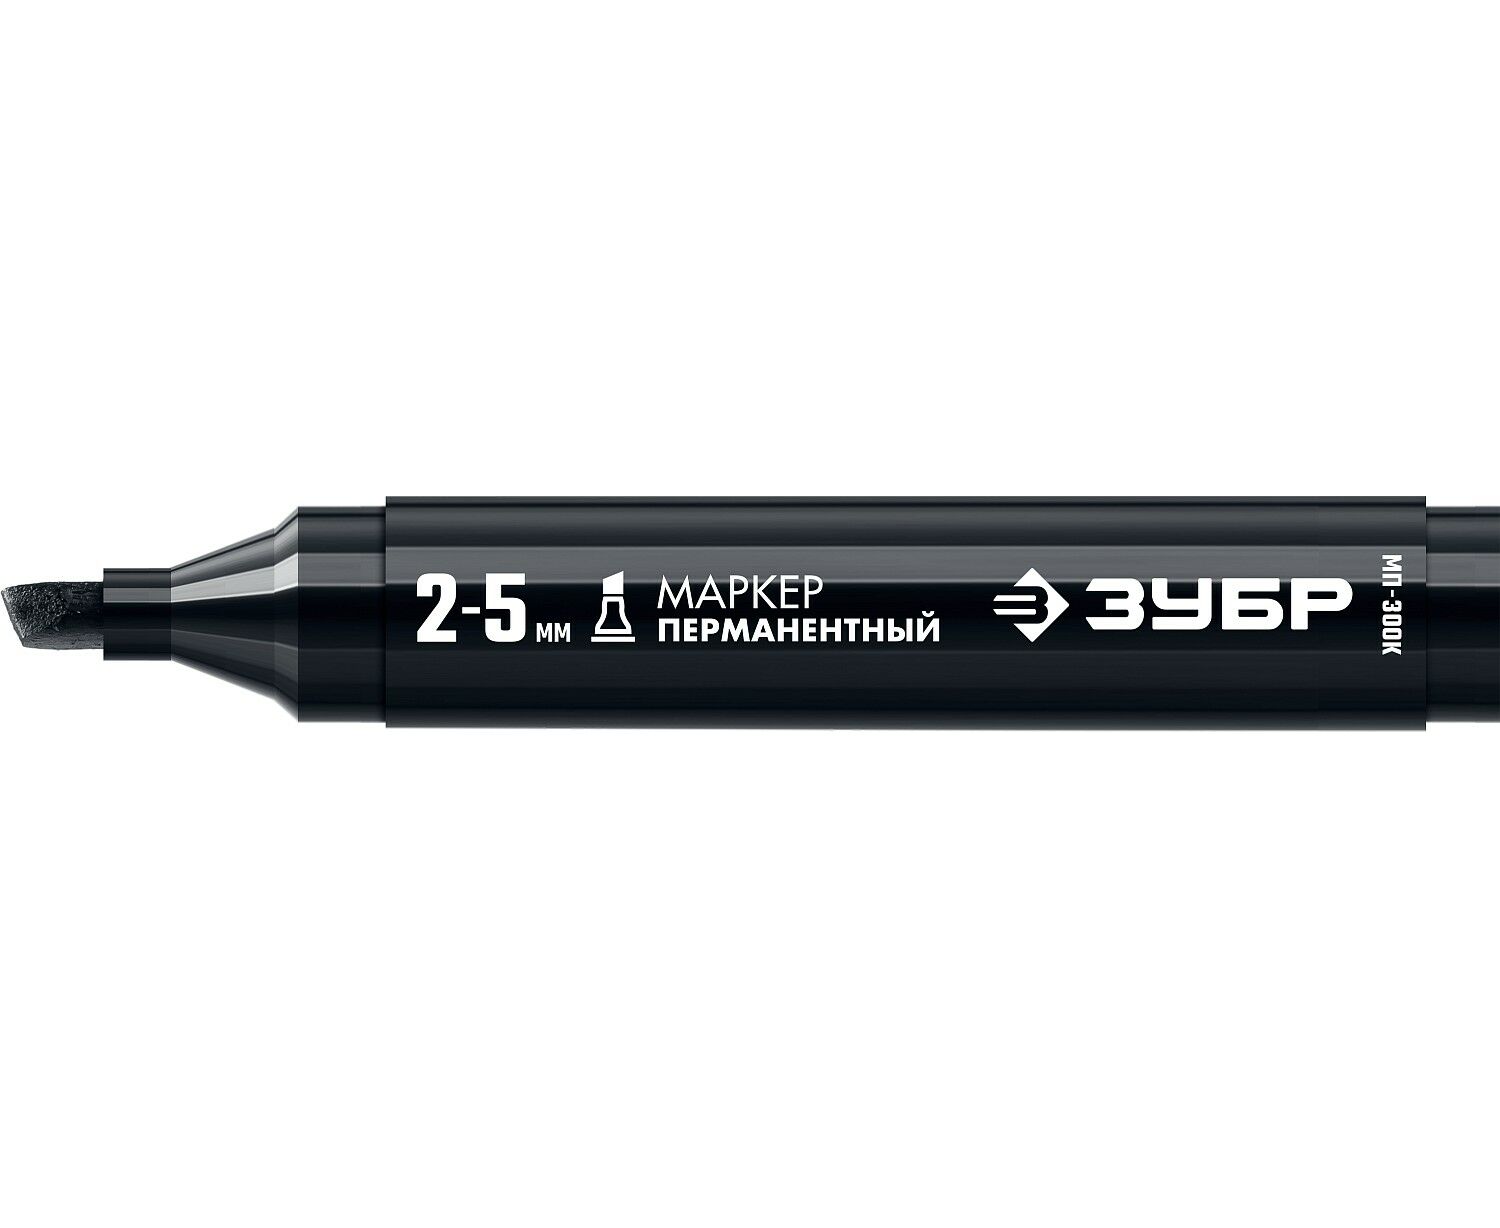 Маркер строительный ЗУБР МП-300К черный, 2-5 мм, клиновидный, перманентный перманентный маркер для отверстий зубр